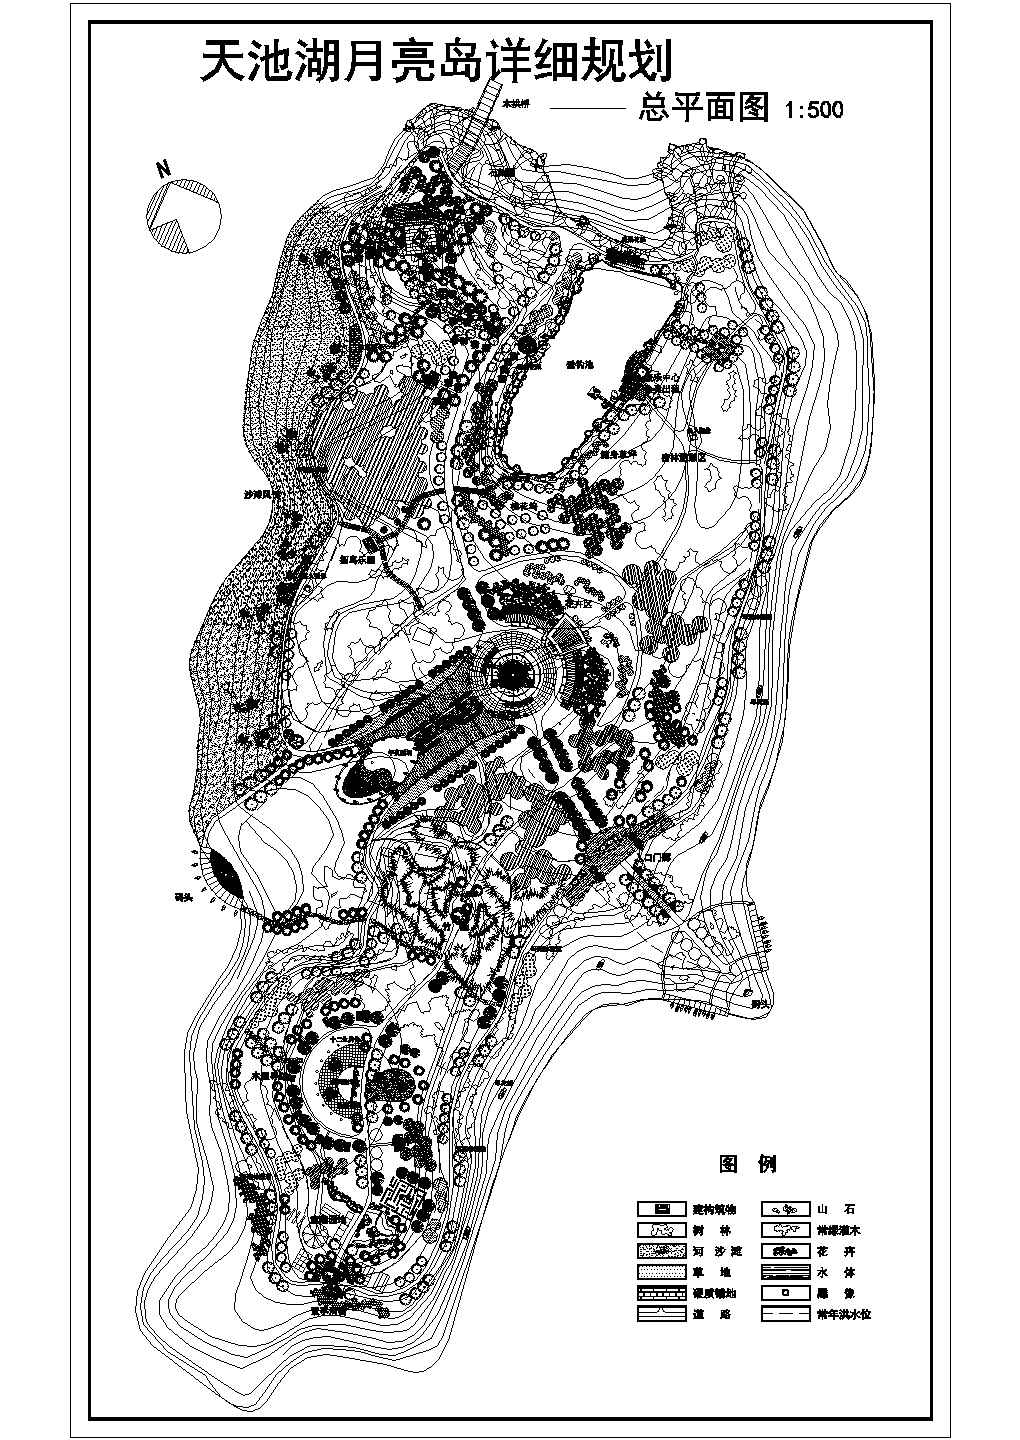 天池湖月亮岛详细规划总平面规设计方案图